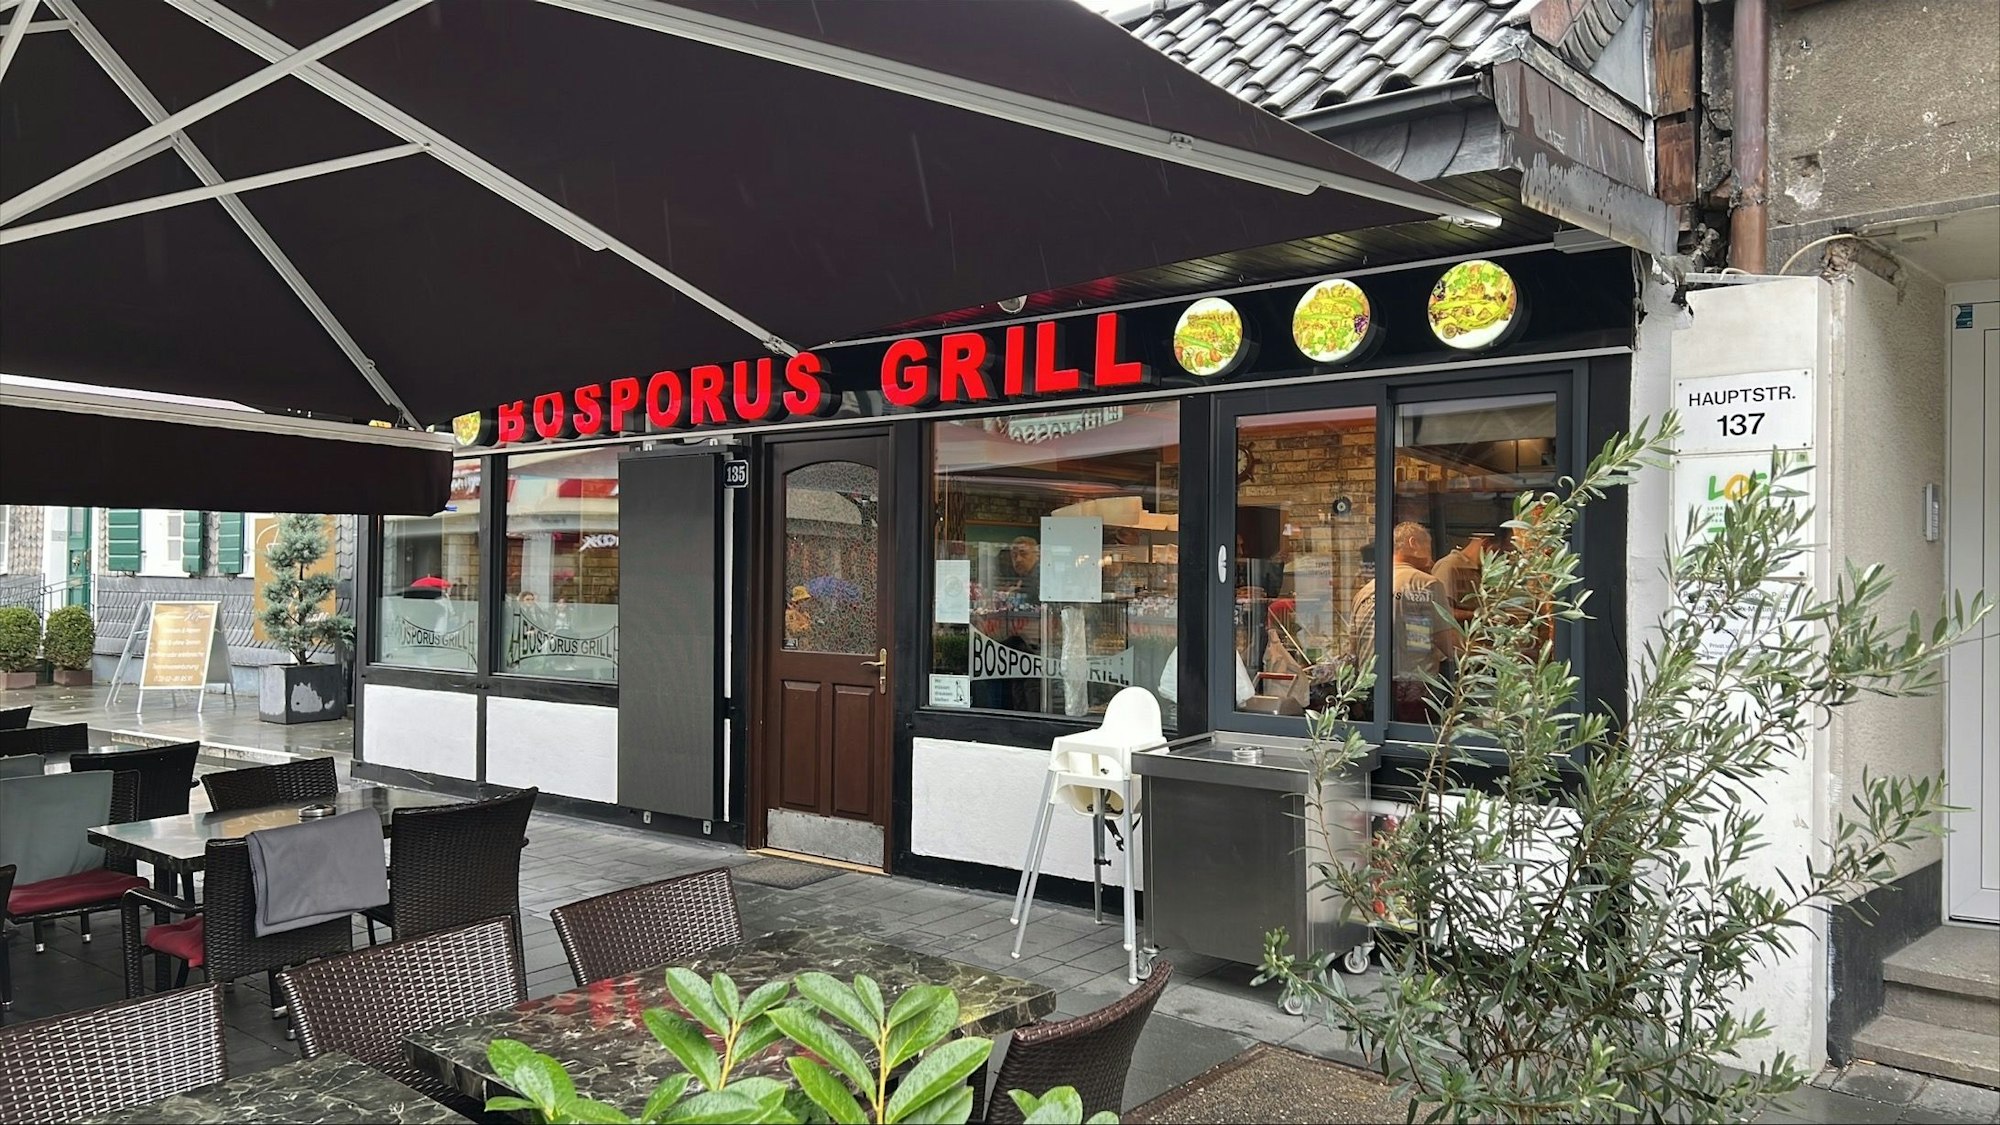 Das Restaurant Bosporus Grill in der Bergisch Gladbacher Innenstadt von außen. Ein Regenschirm ist über dem Außenbereich mit Stühlen gespannt.